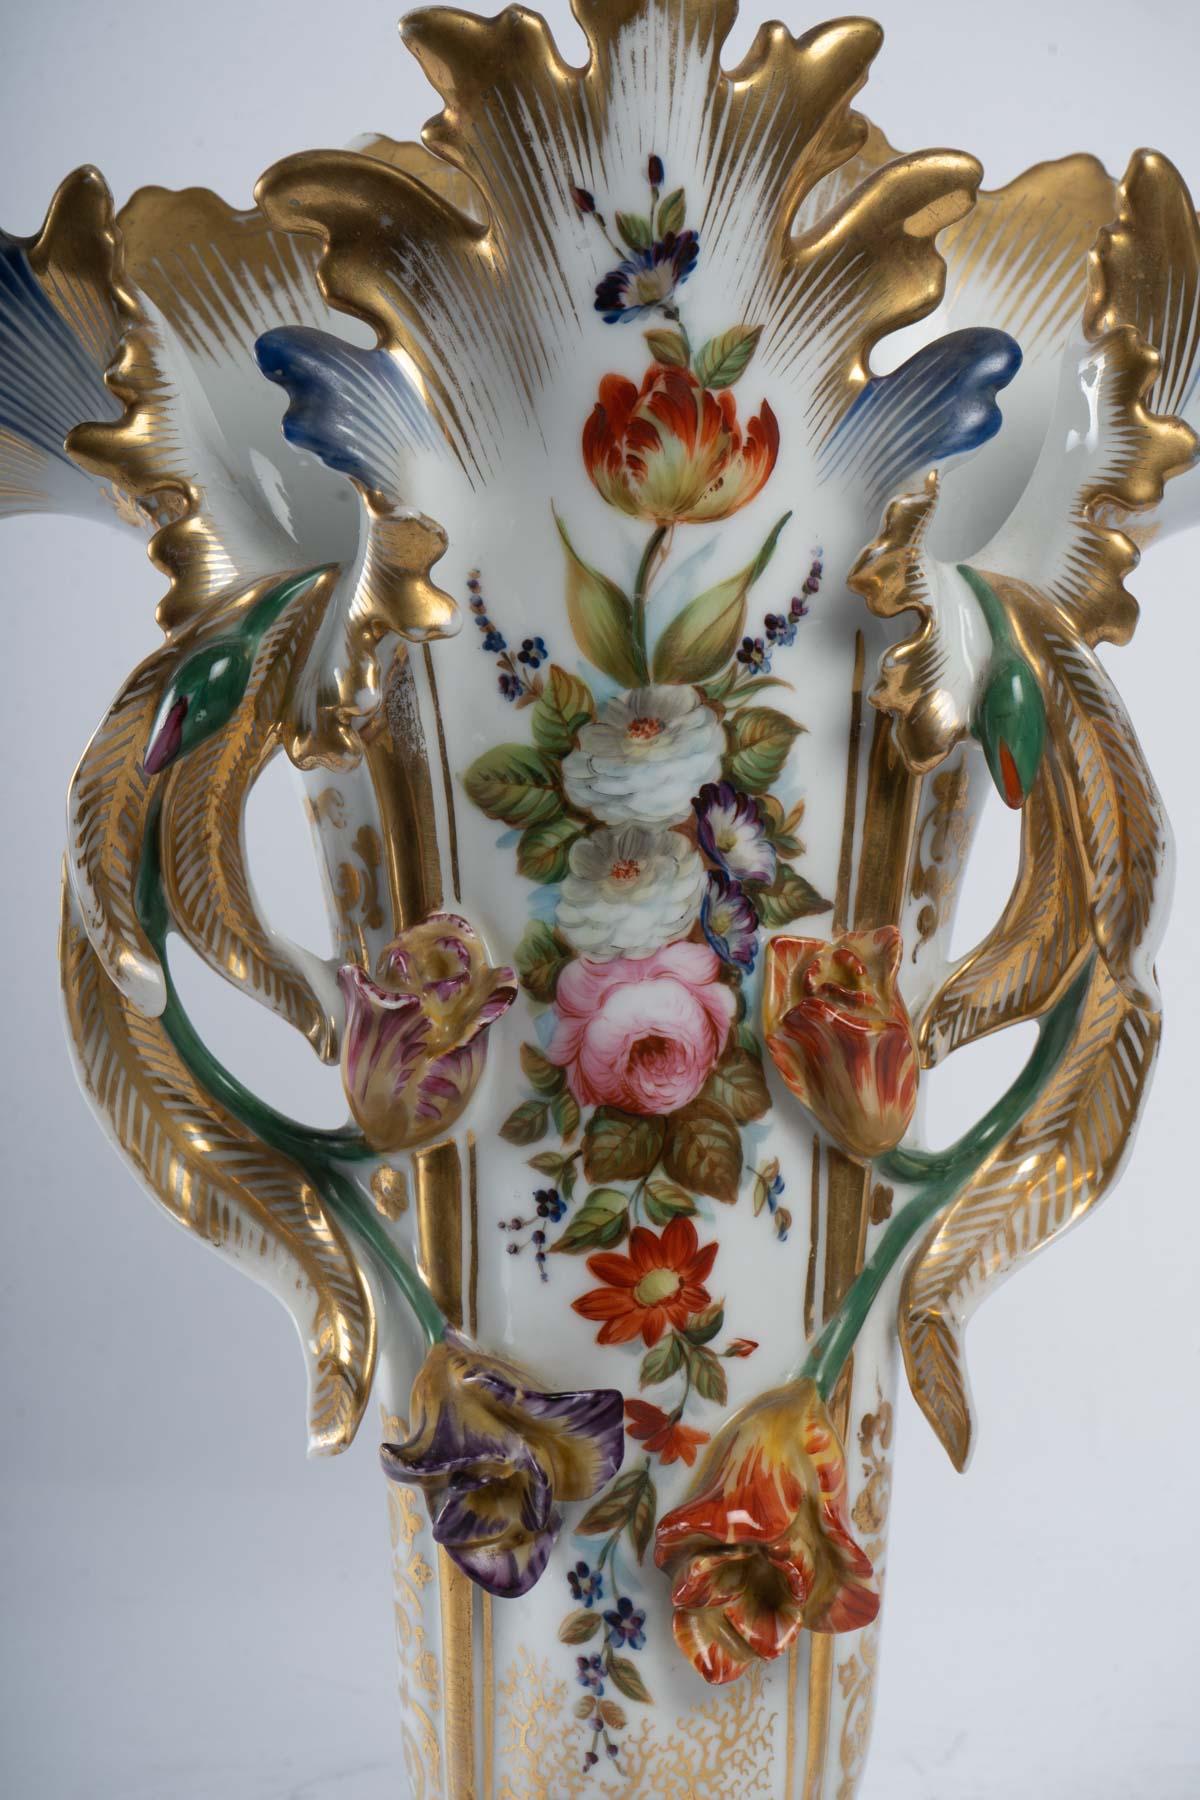 Pair of Old Paris porcelain vases, 19th century.
Measures: H: 37 cm, W: 34 cm, D: 16 cm.